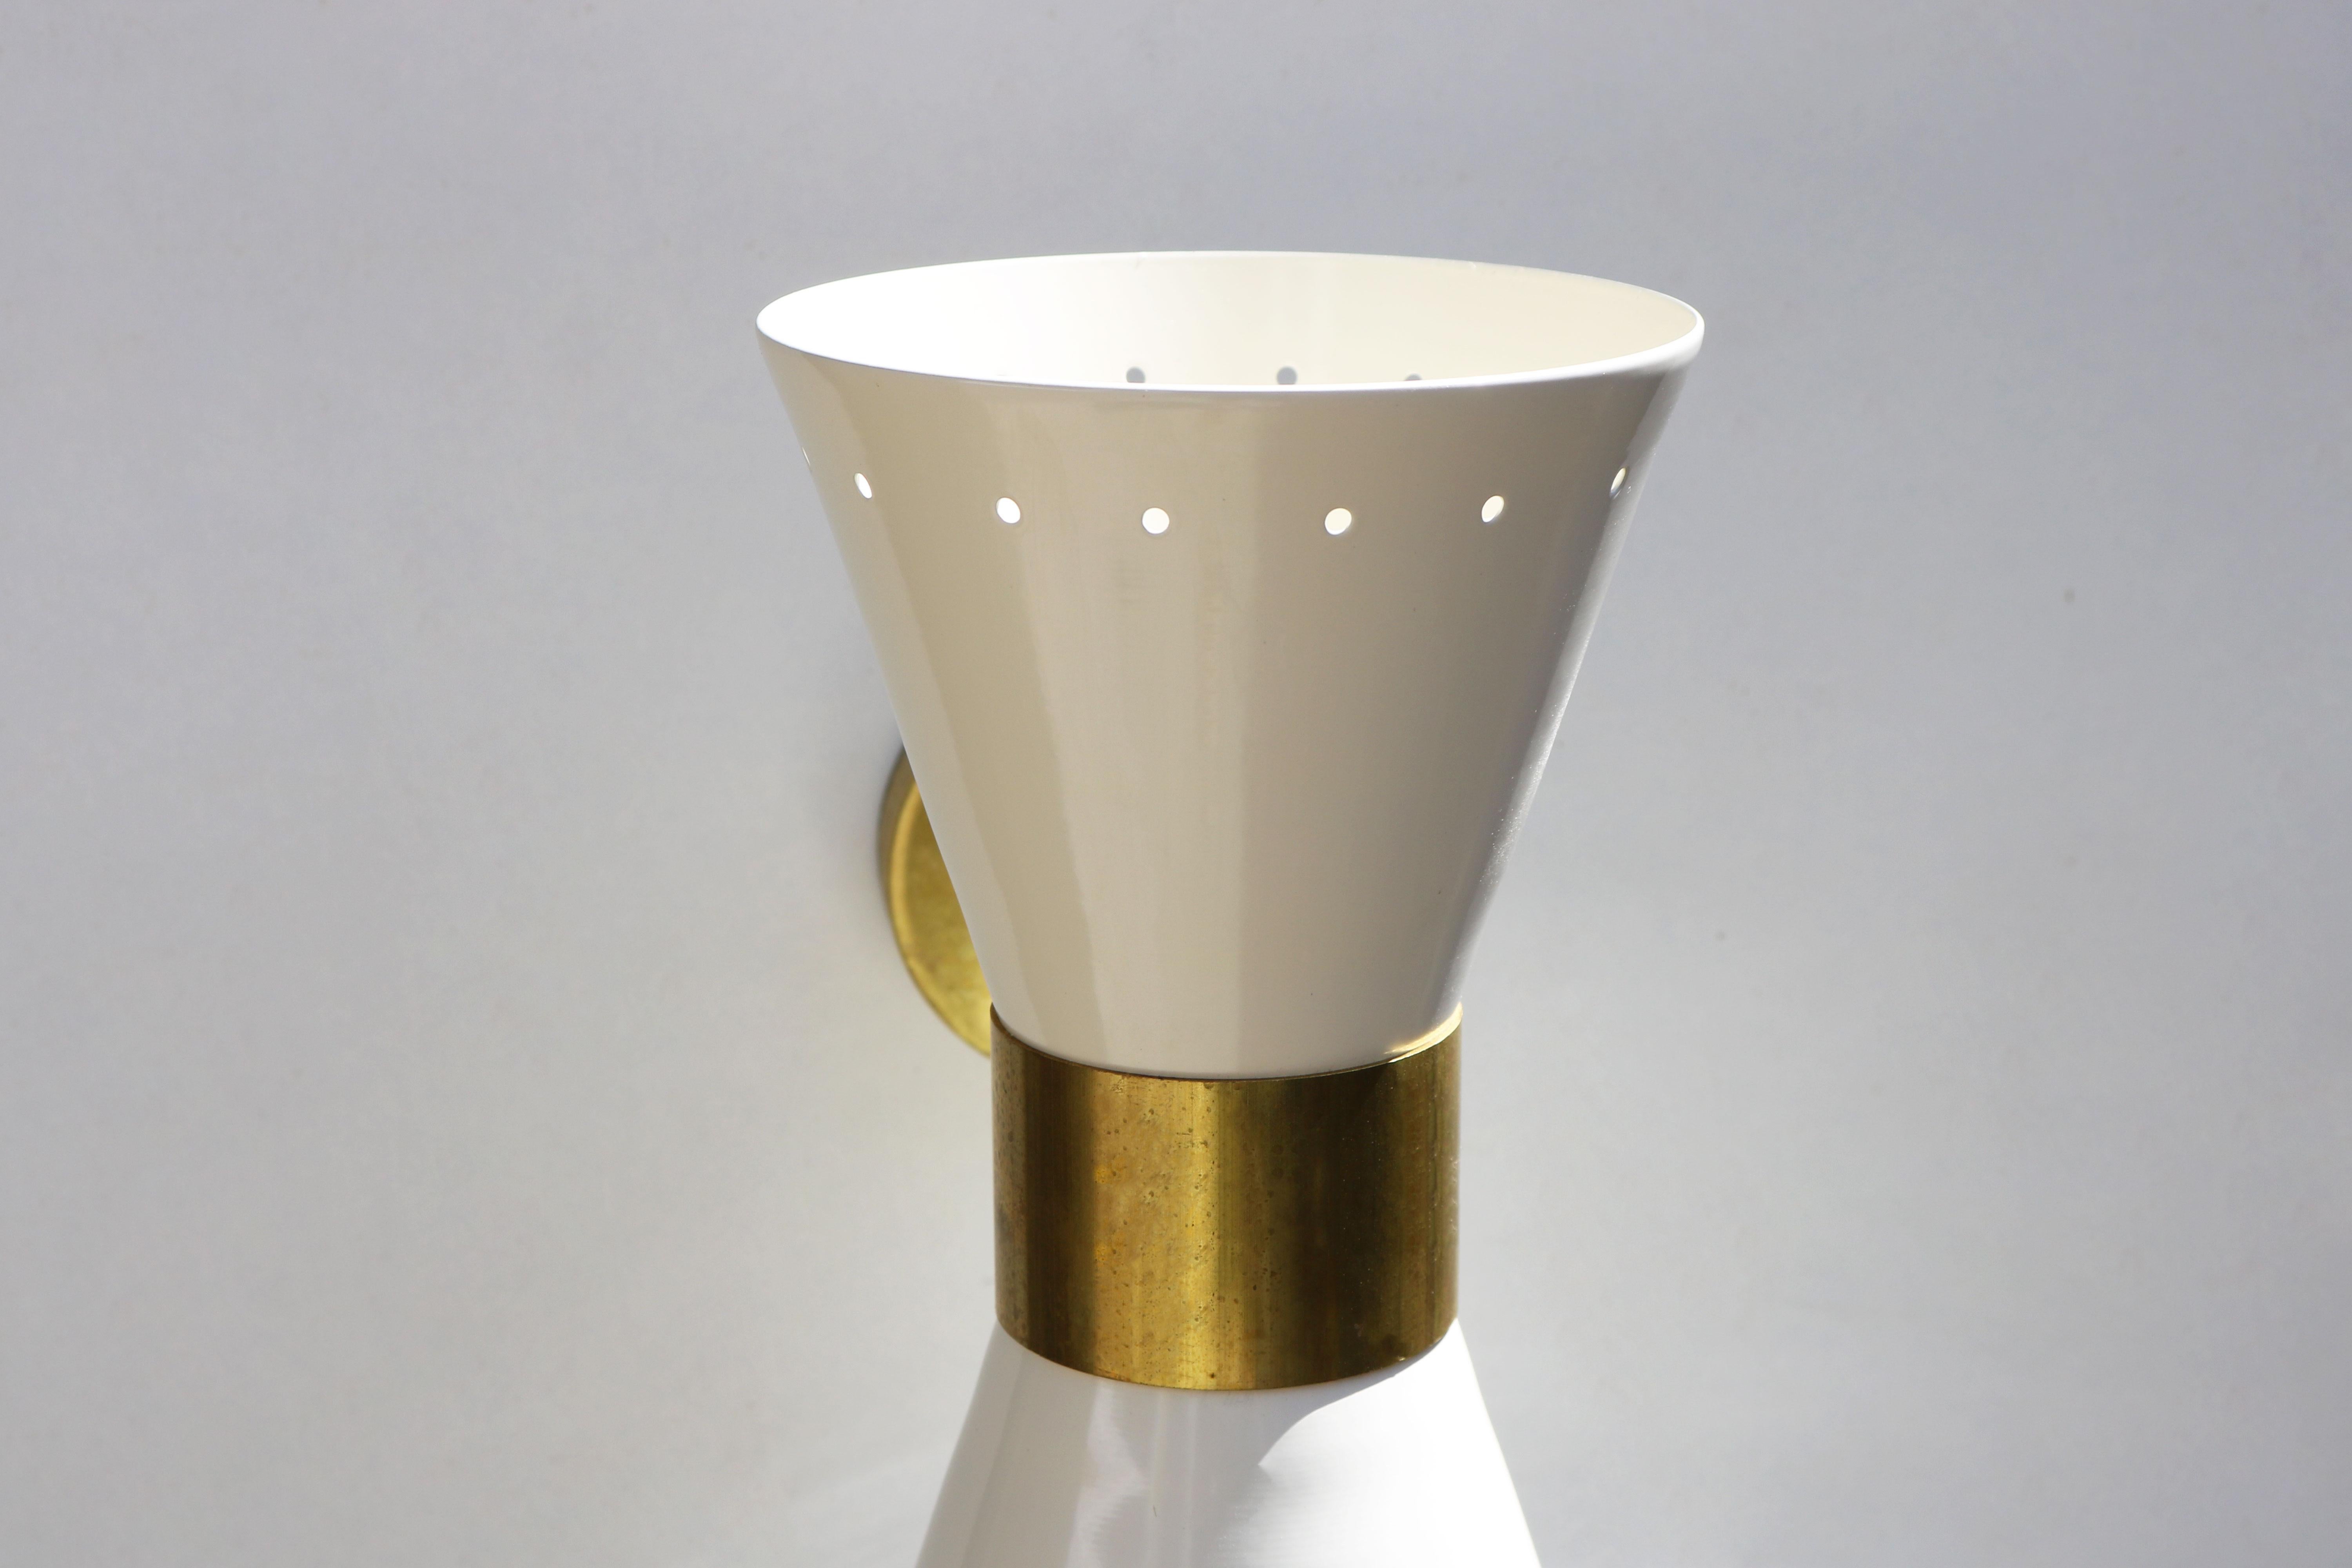 Mid-Century Modern 1 of 6 Italian Modern Design Wall Light Sconces Stilnovo Style Ivory White Brass For Sale